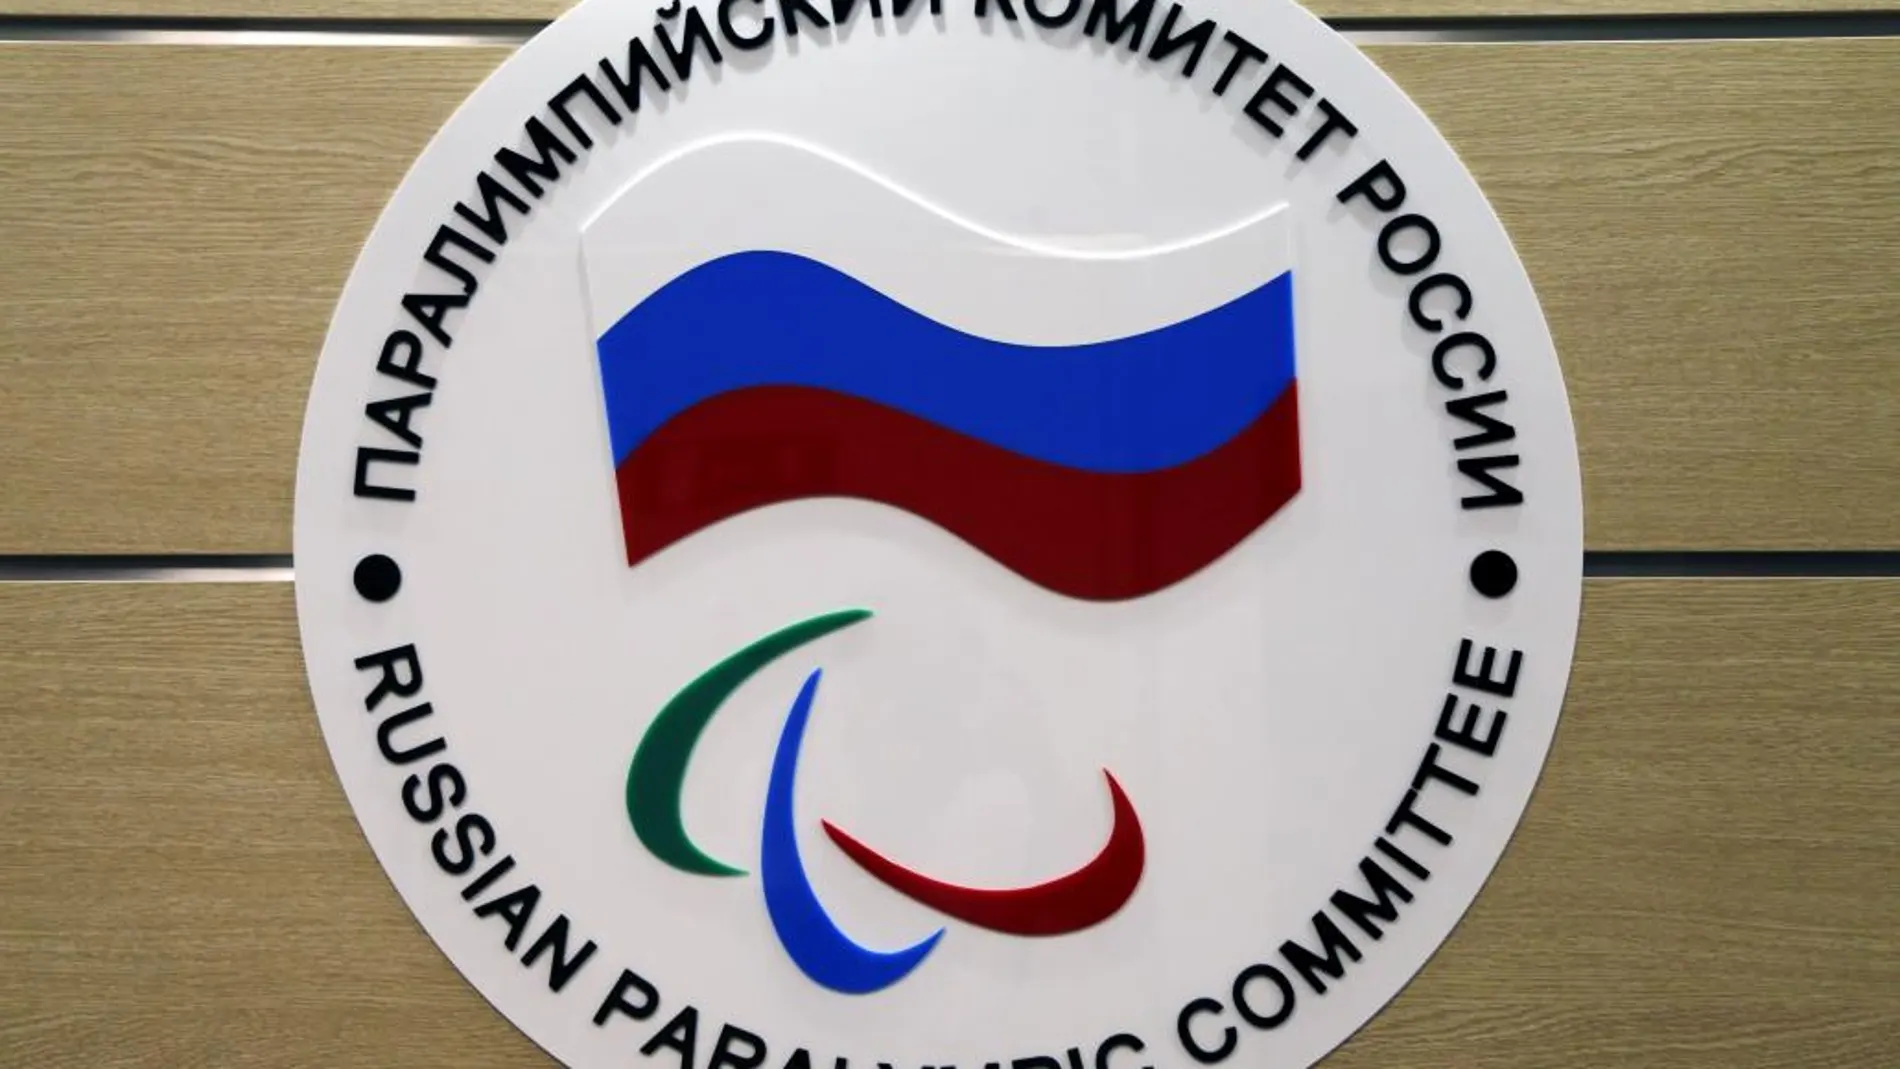 Fotografía de archivo tomada el 8 de agosto de 2016 que muestra el logotipo del Comité Paralímpico Ruso en Moscú (Rusia).